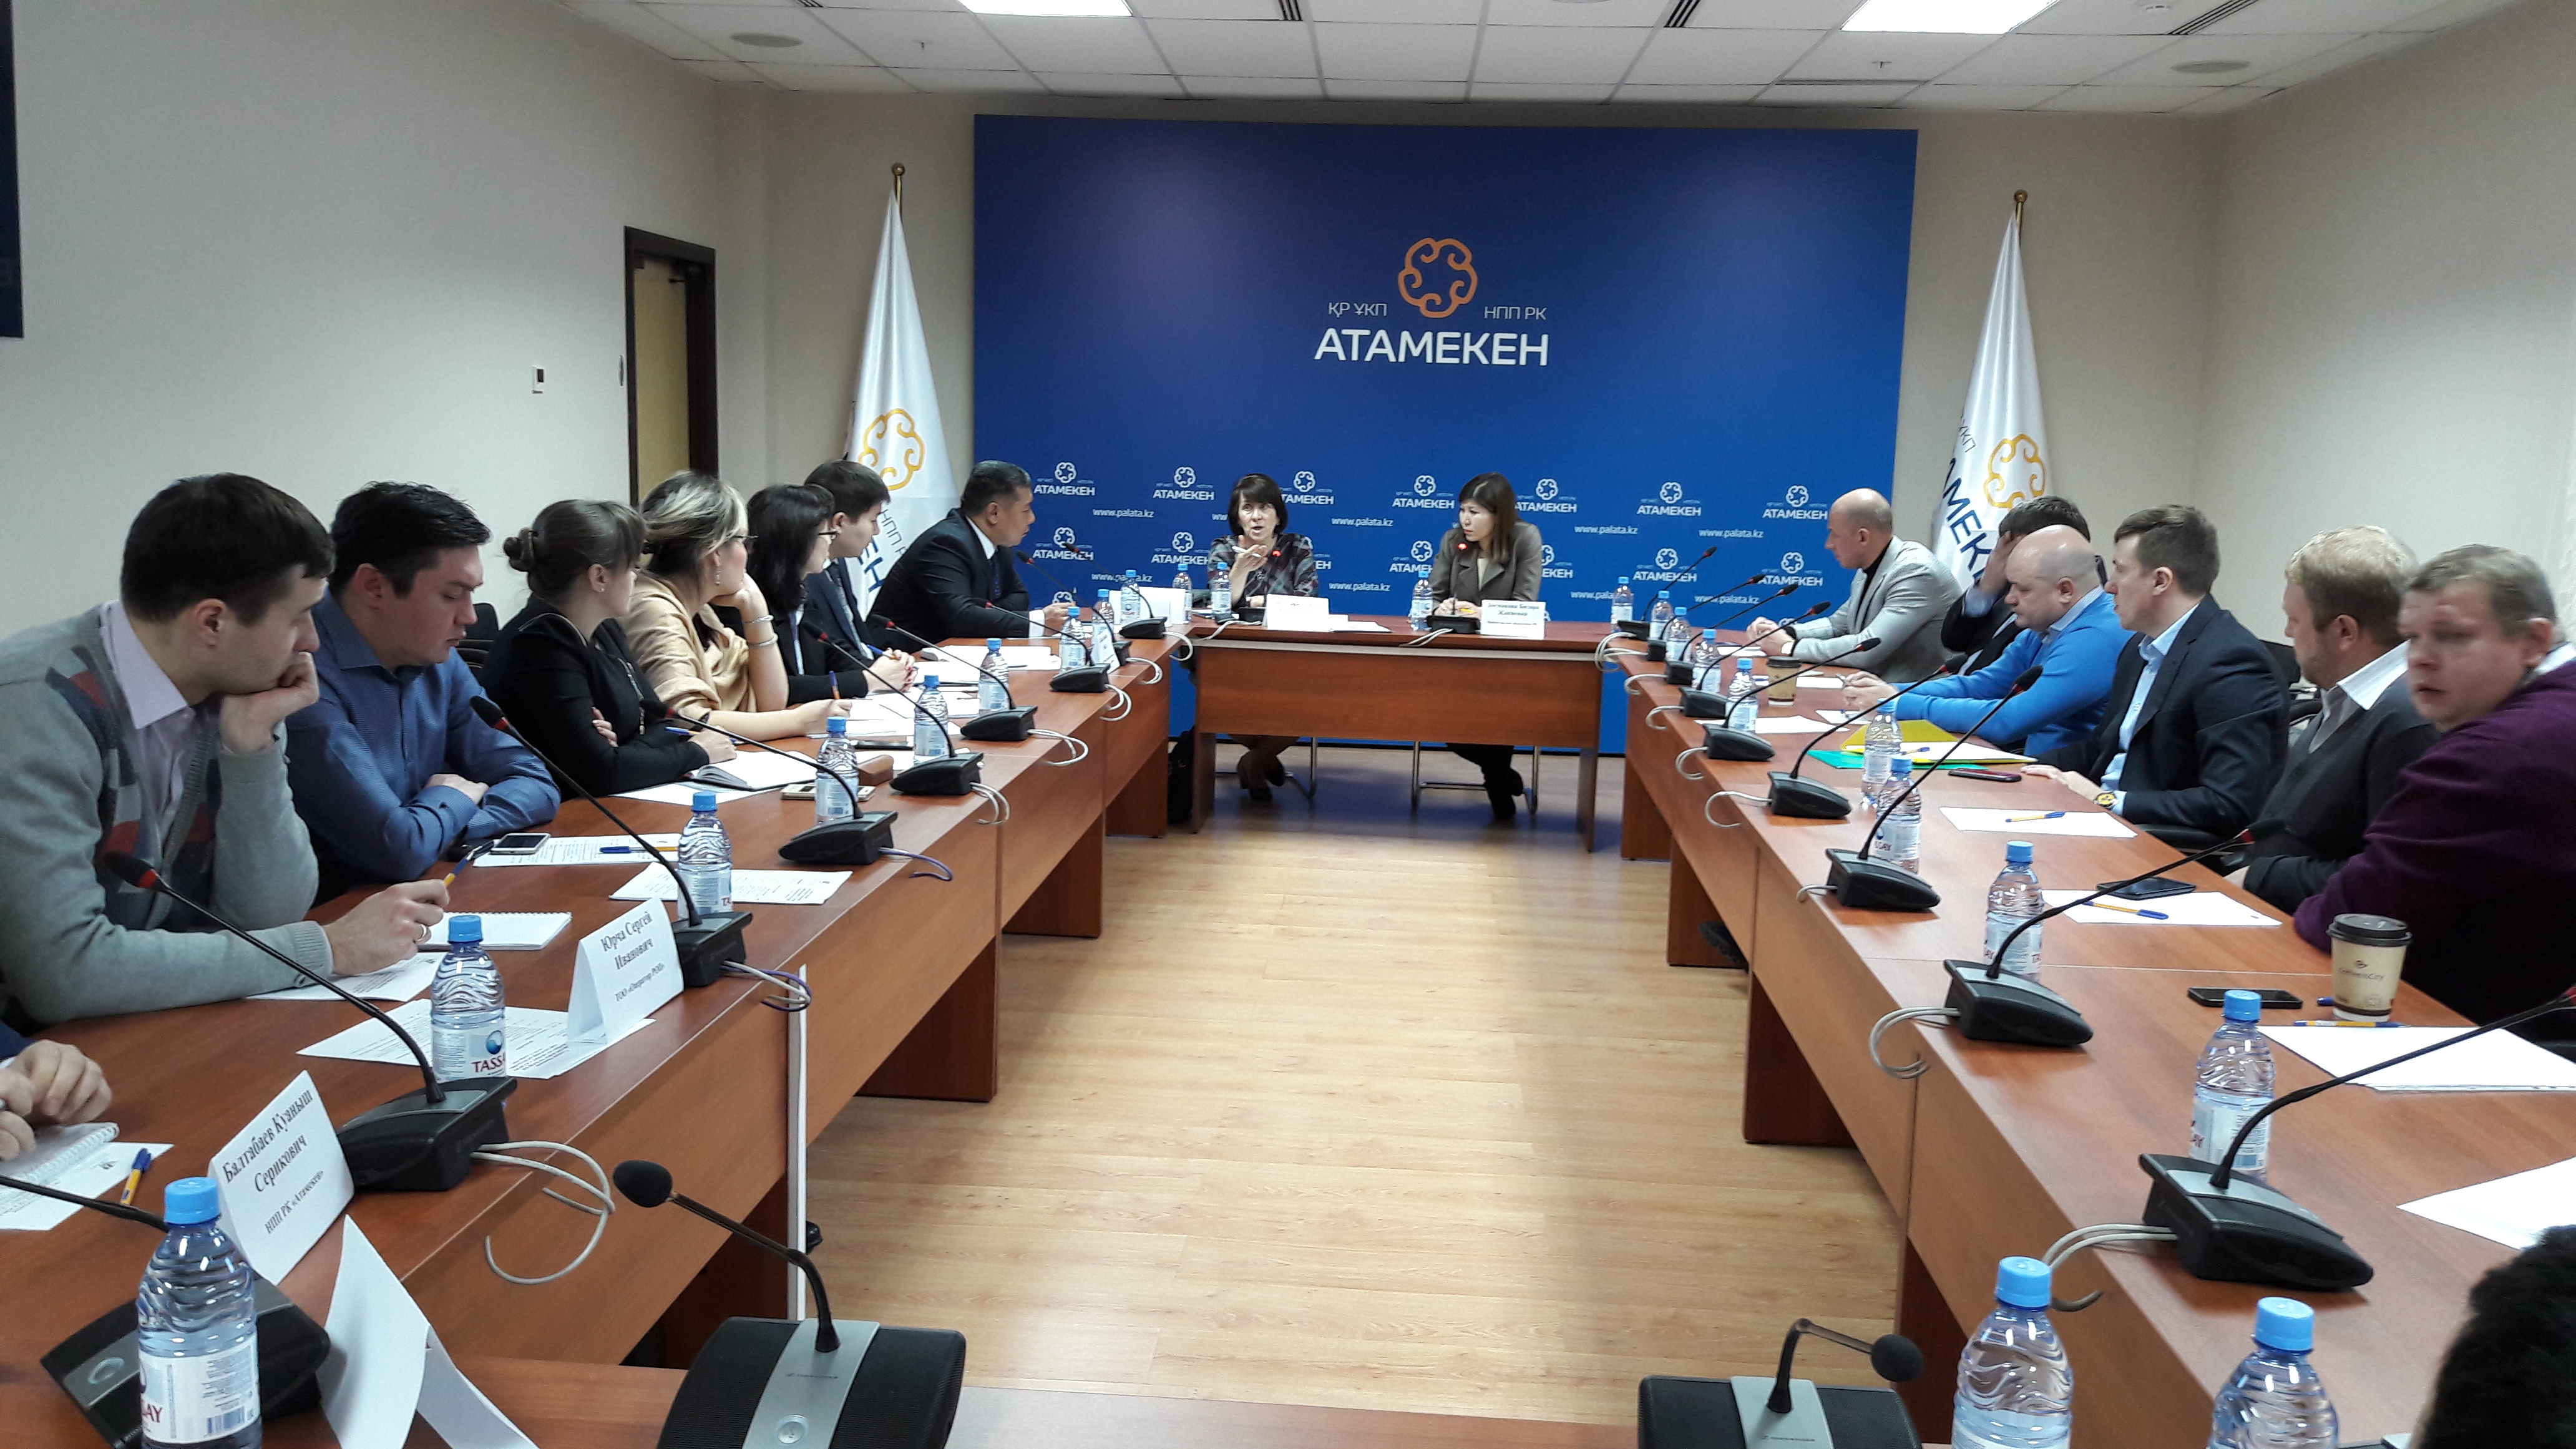 Годовое Общее собрание членов Ассоциации прошло 21 декабря 2016г. в г. Астана.